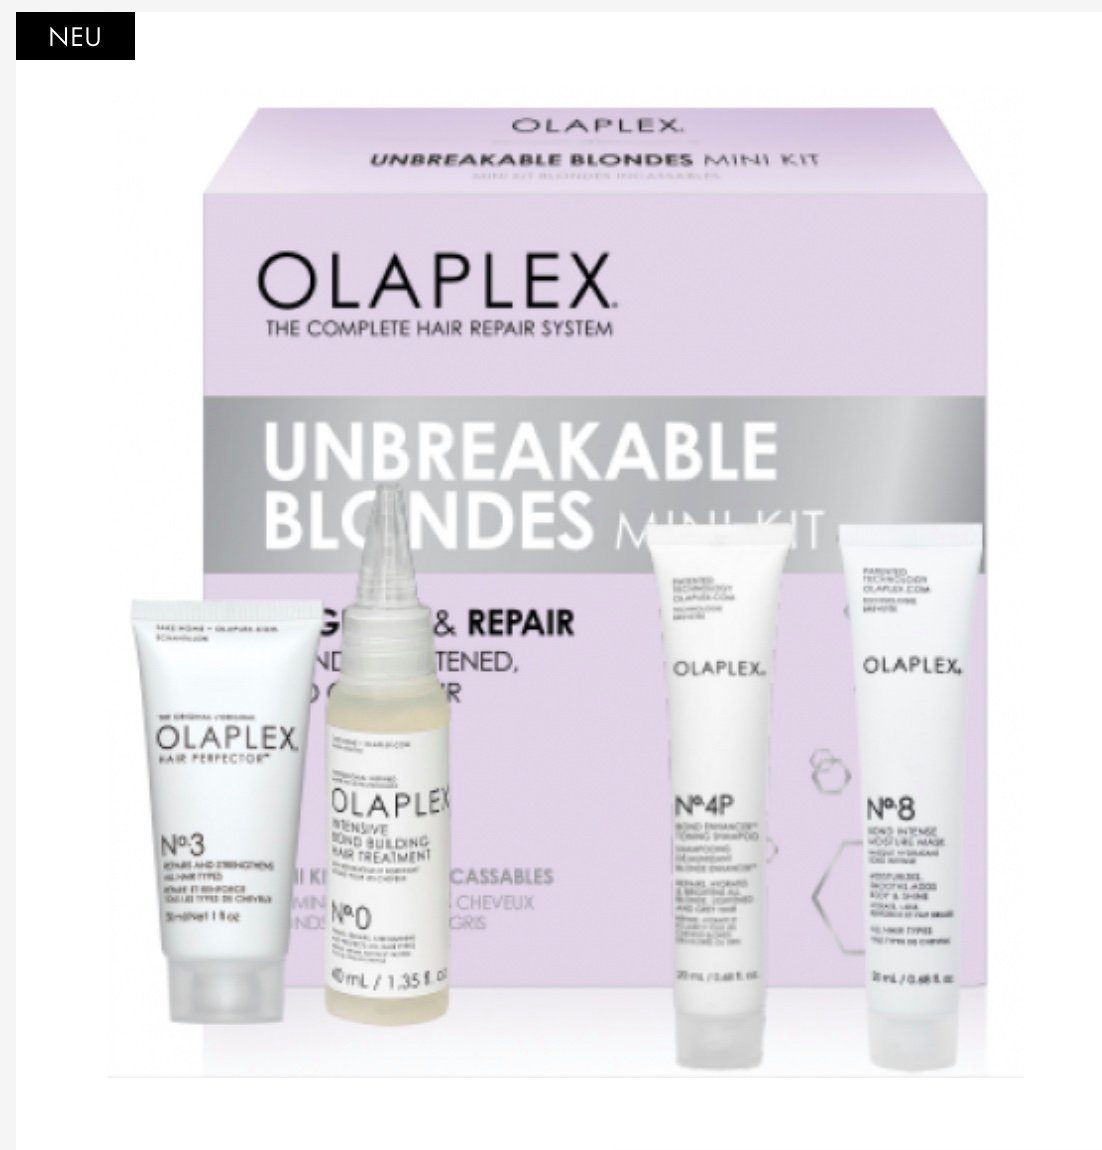 Olaplex Haarpflege-Set Unbreakable Blondes Kit, Reiseset, 4-tlg., No. 0 40 ml + No. 3 30 ml + No. 4P 20 ml + No. 8 20 ml, repariert, neutralisiert Gelbstich, Feuchtigkeitsspendend